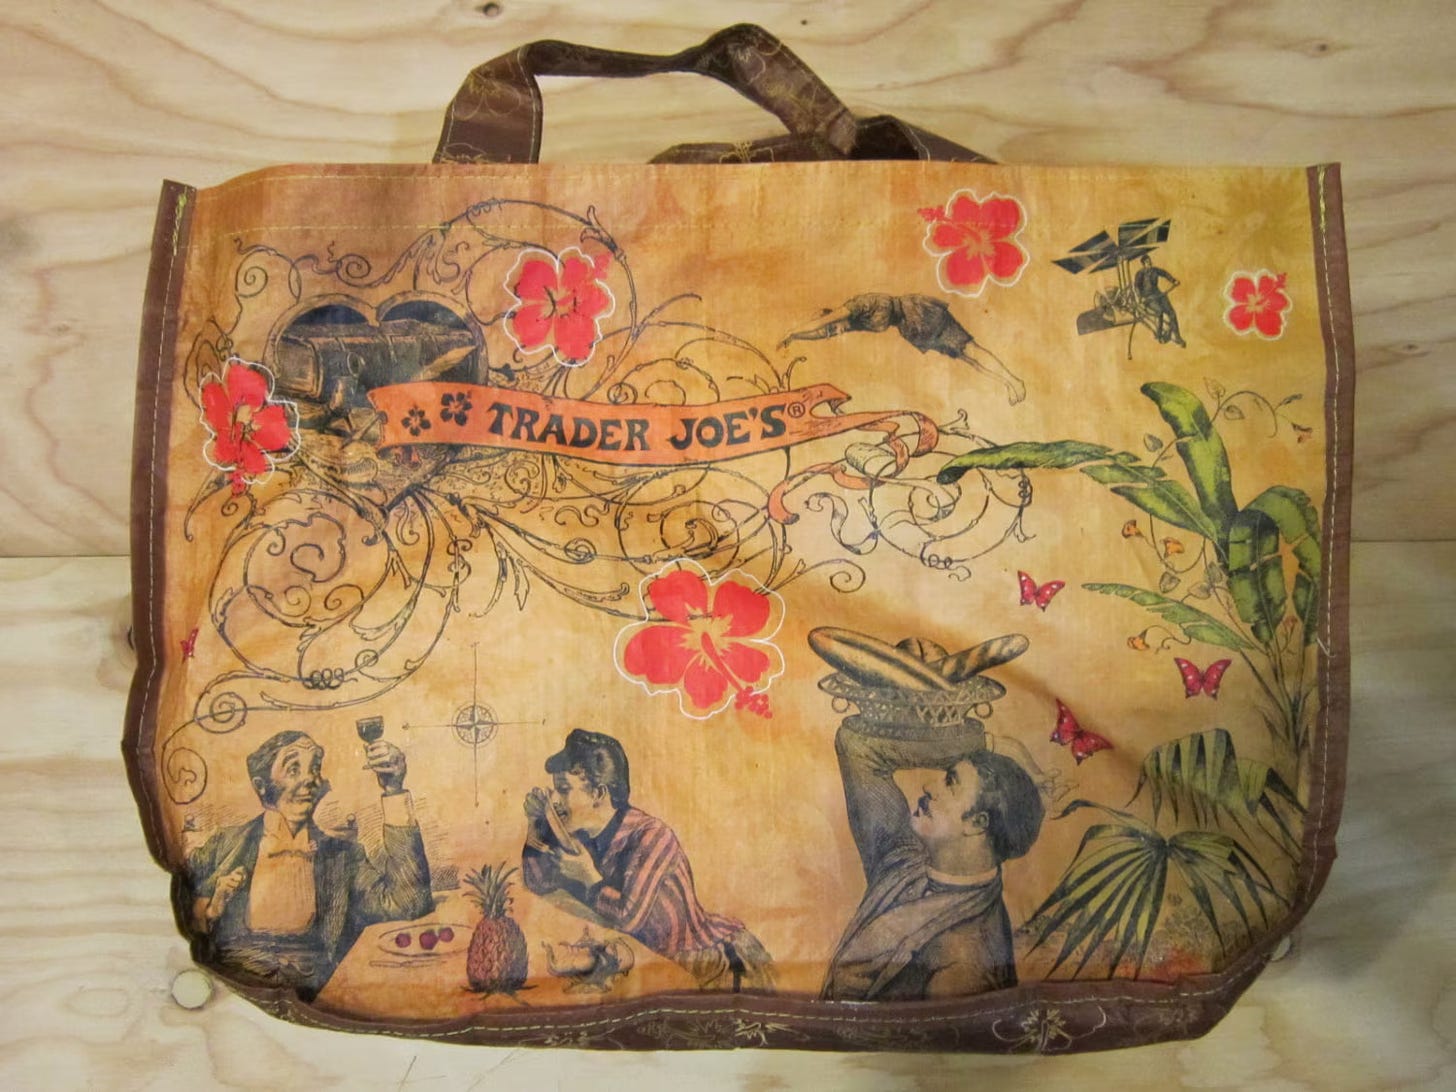 A Trader Joe's reusable bag.